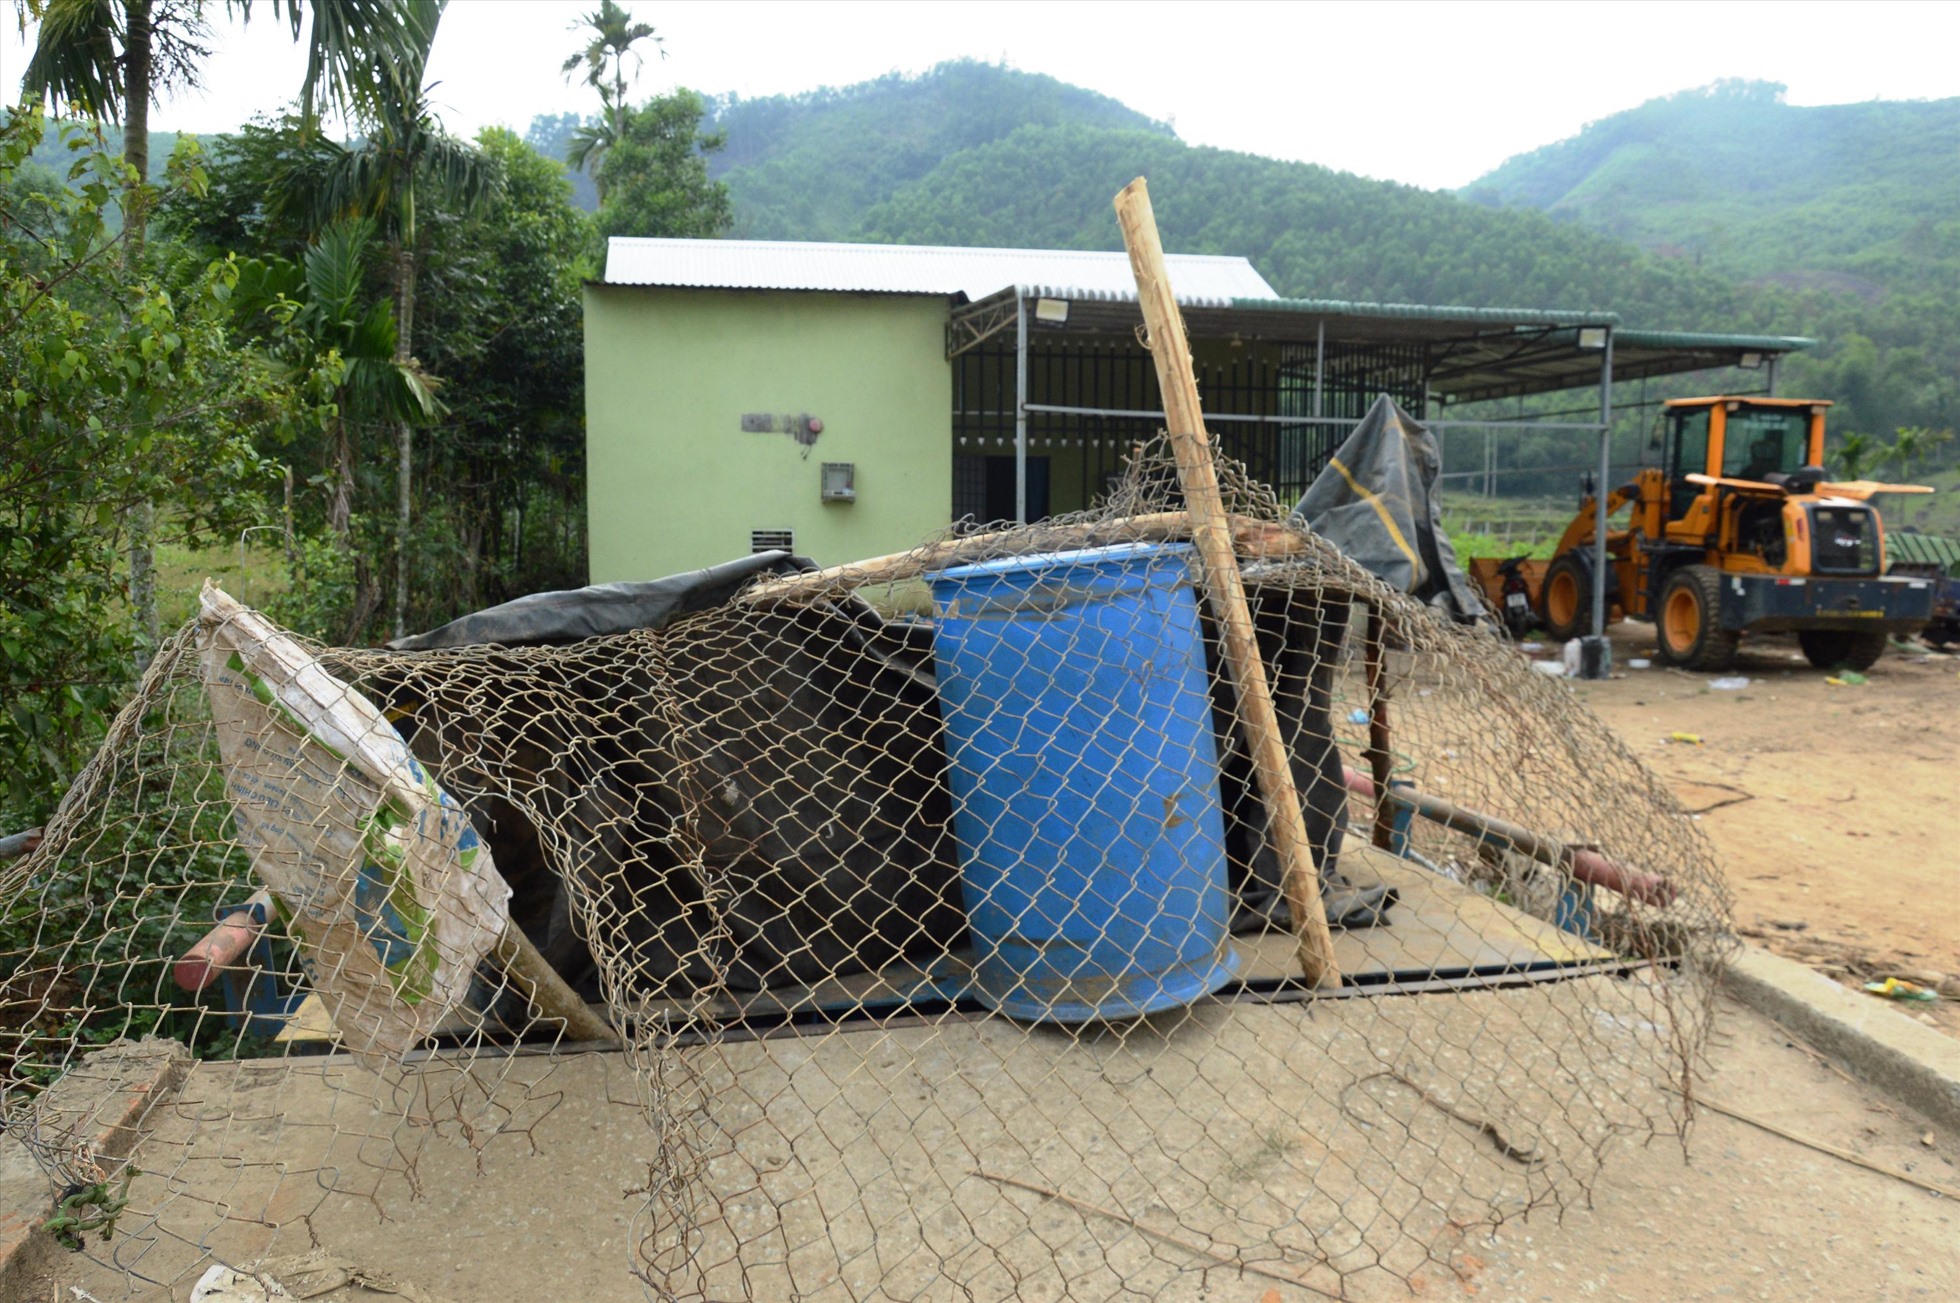 Hàng loạt trạm cân thu mua keo ở các huyện miền núi tỉnh Quảng Ngãi buộc phải đóng cửa theo yêu cầu của nhà chức trách, khiến hàng nghìn hộ trồng keo bí đường vận chuyển. Ảnh: Ngọc Viên